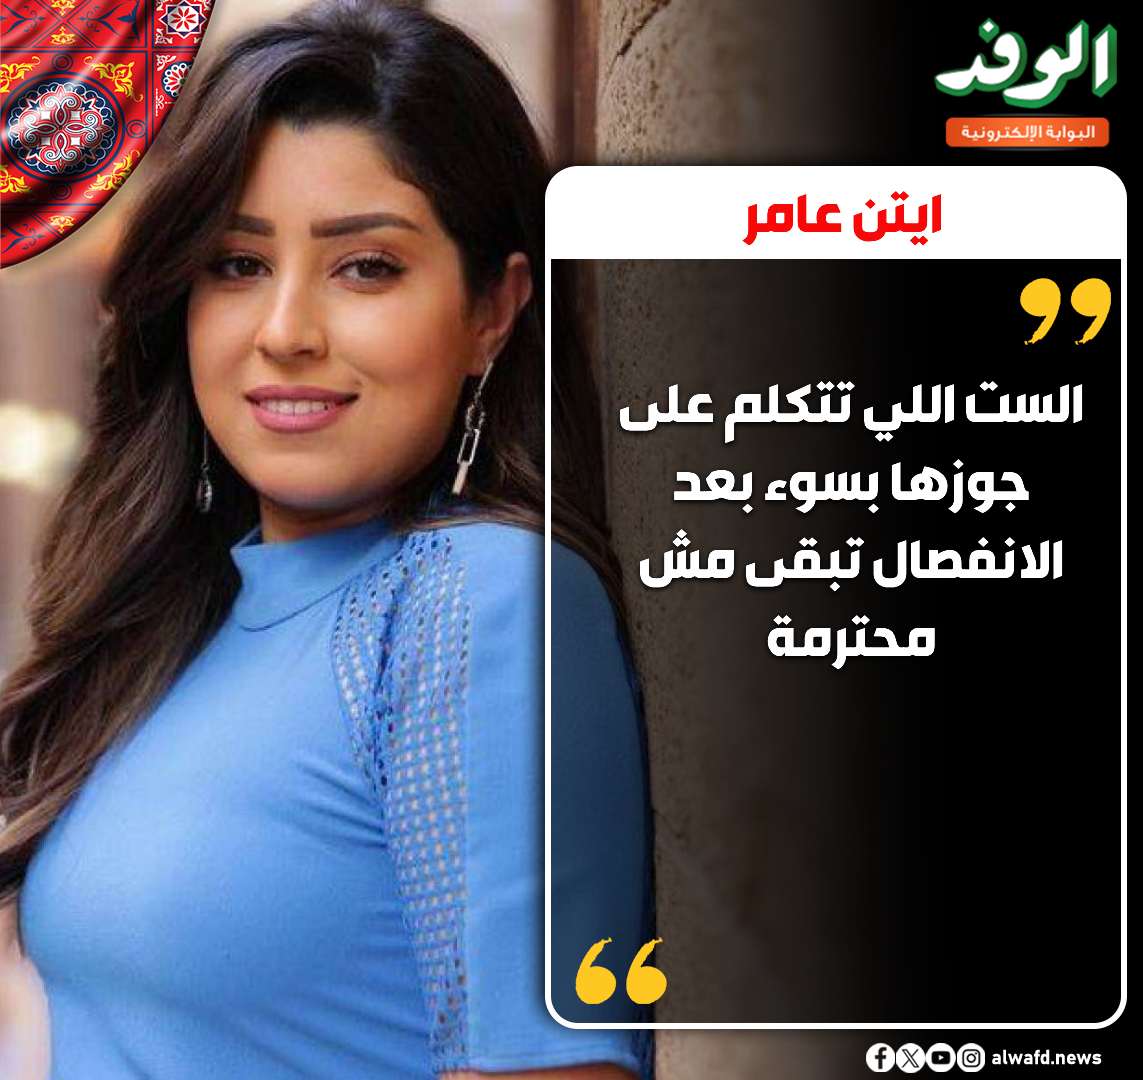 بوابة الوفد| آيتن عامر: "الست اللي تتكلم على جوزها بسوء بعد الانفصال تبقى مش محترمة" 